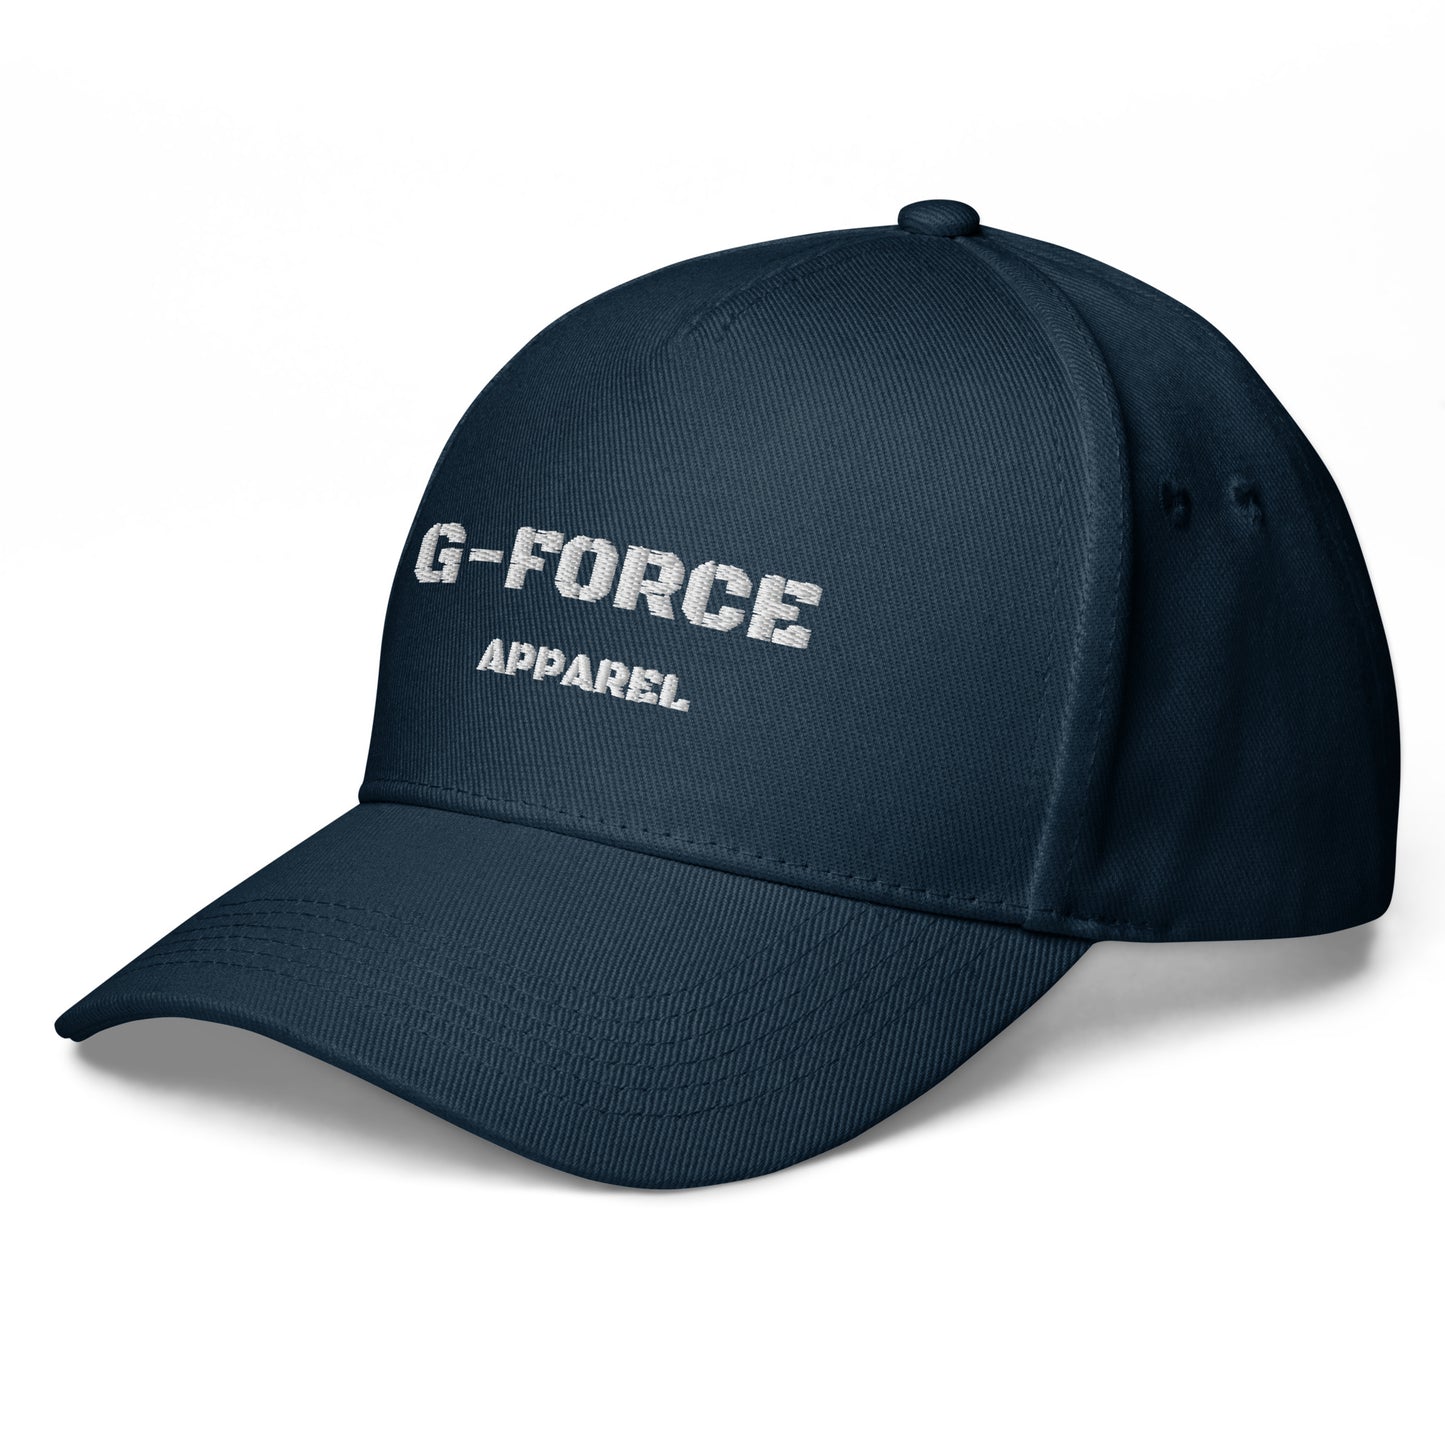 G-FORCE APPAREL Block baseball cap